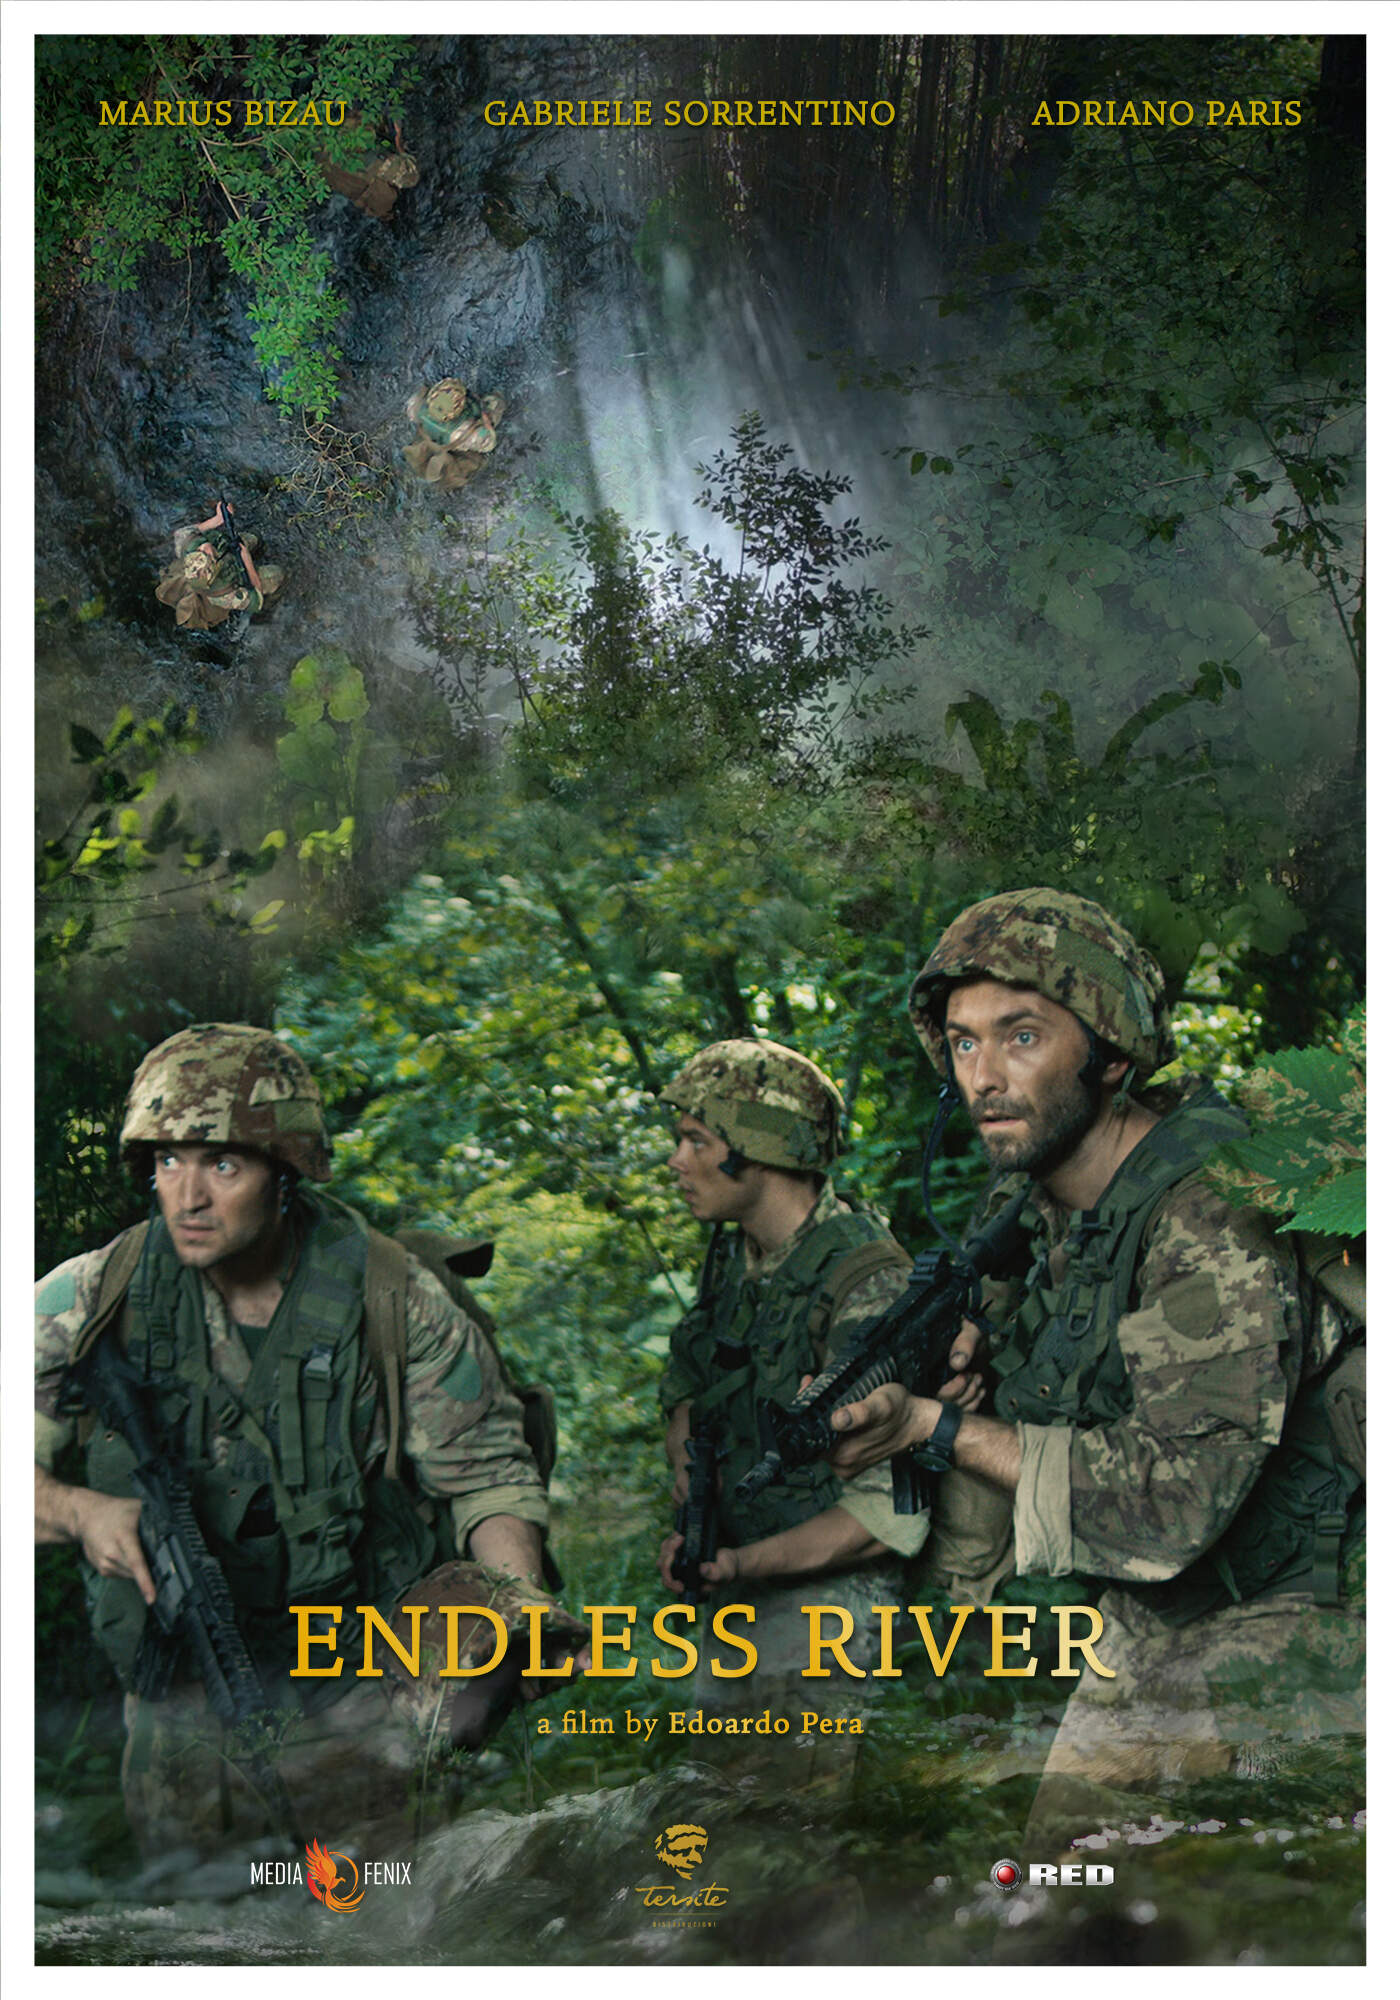 Poster - Endless River by Edoardo Pera